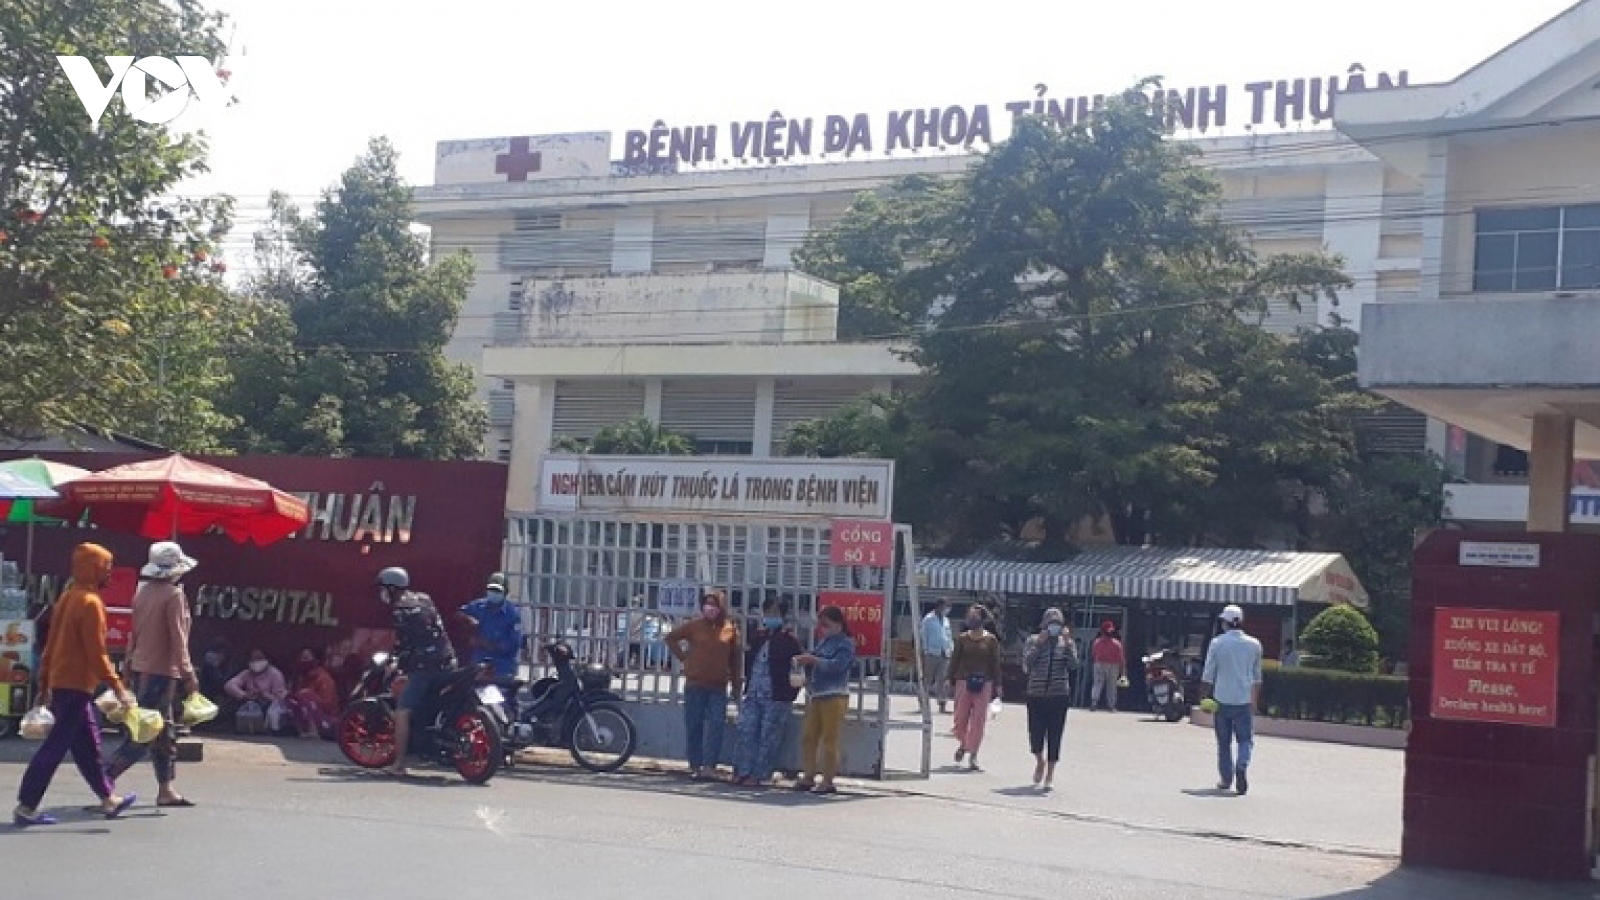 Phong tỏa một khoa ở Bệnh viện Đa khoa Bình Thuận để phòng dịch